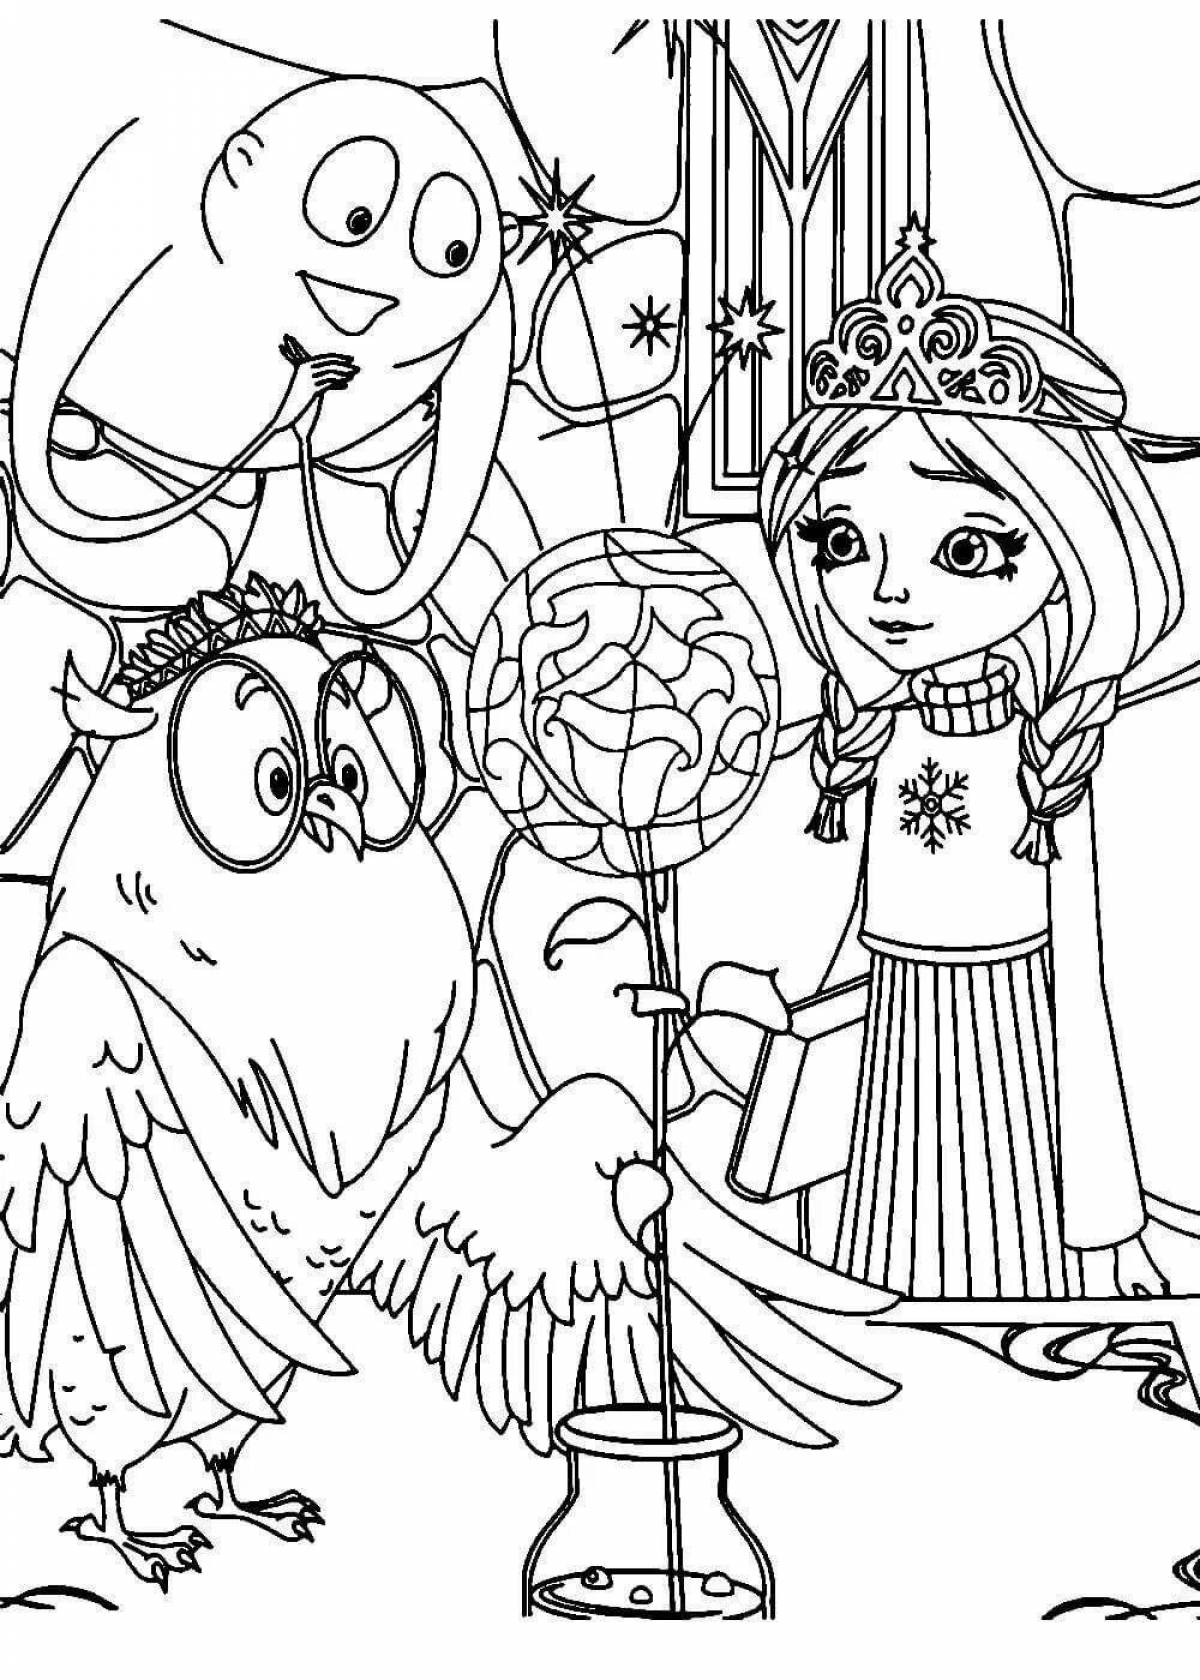 Mystic princess marlene coloring book